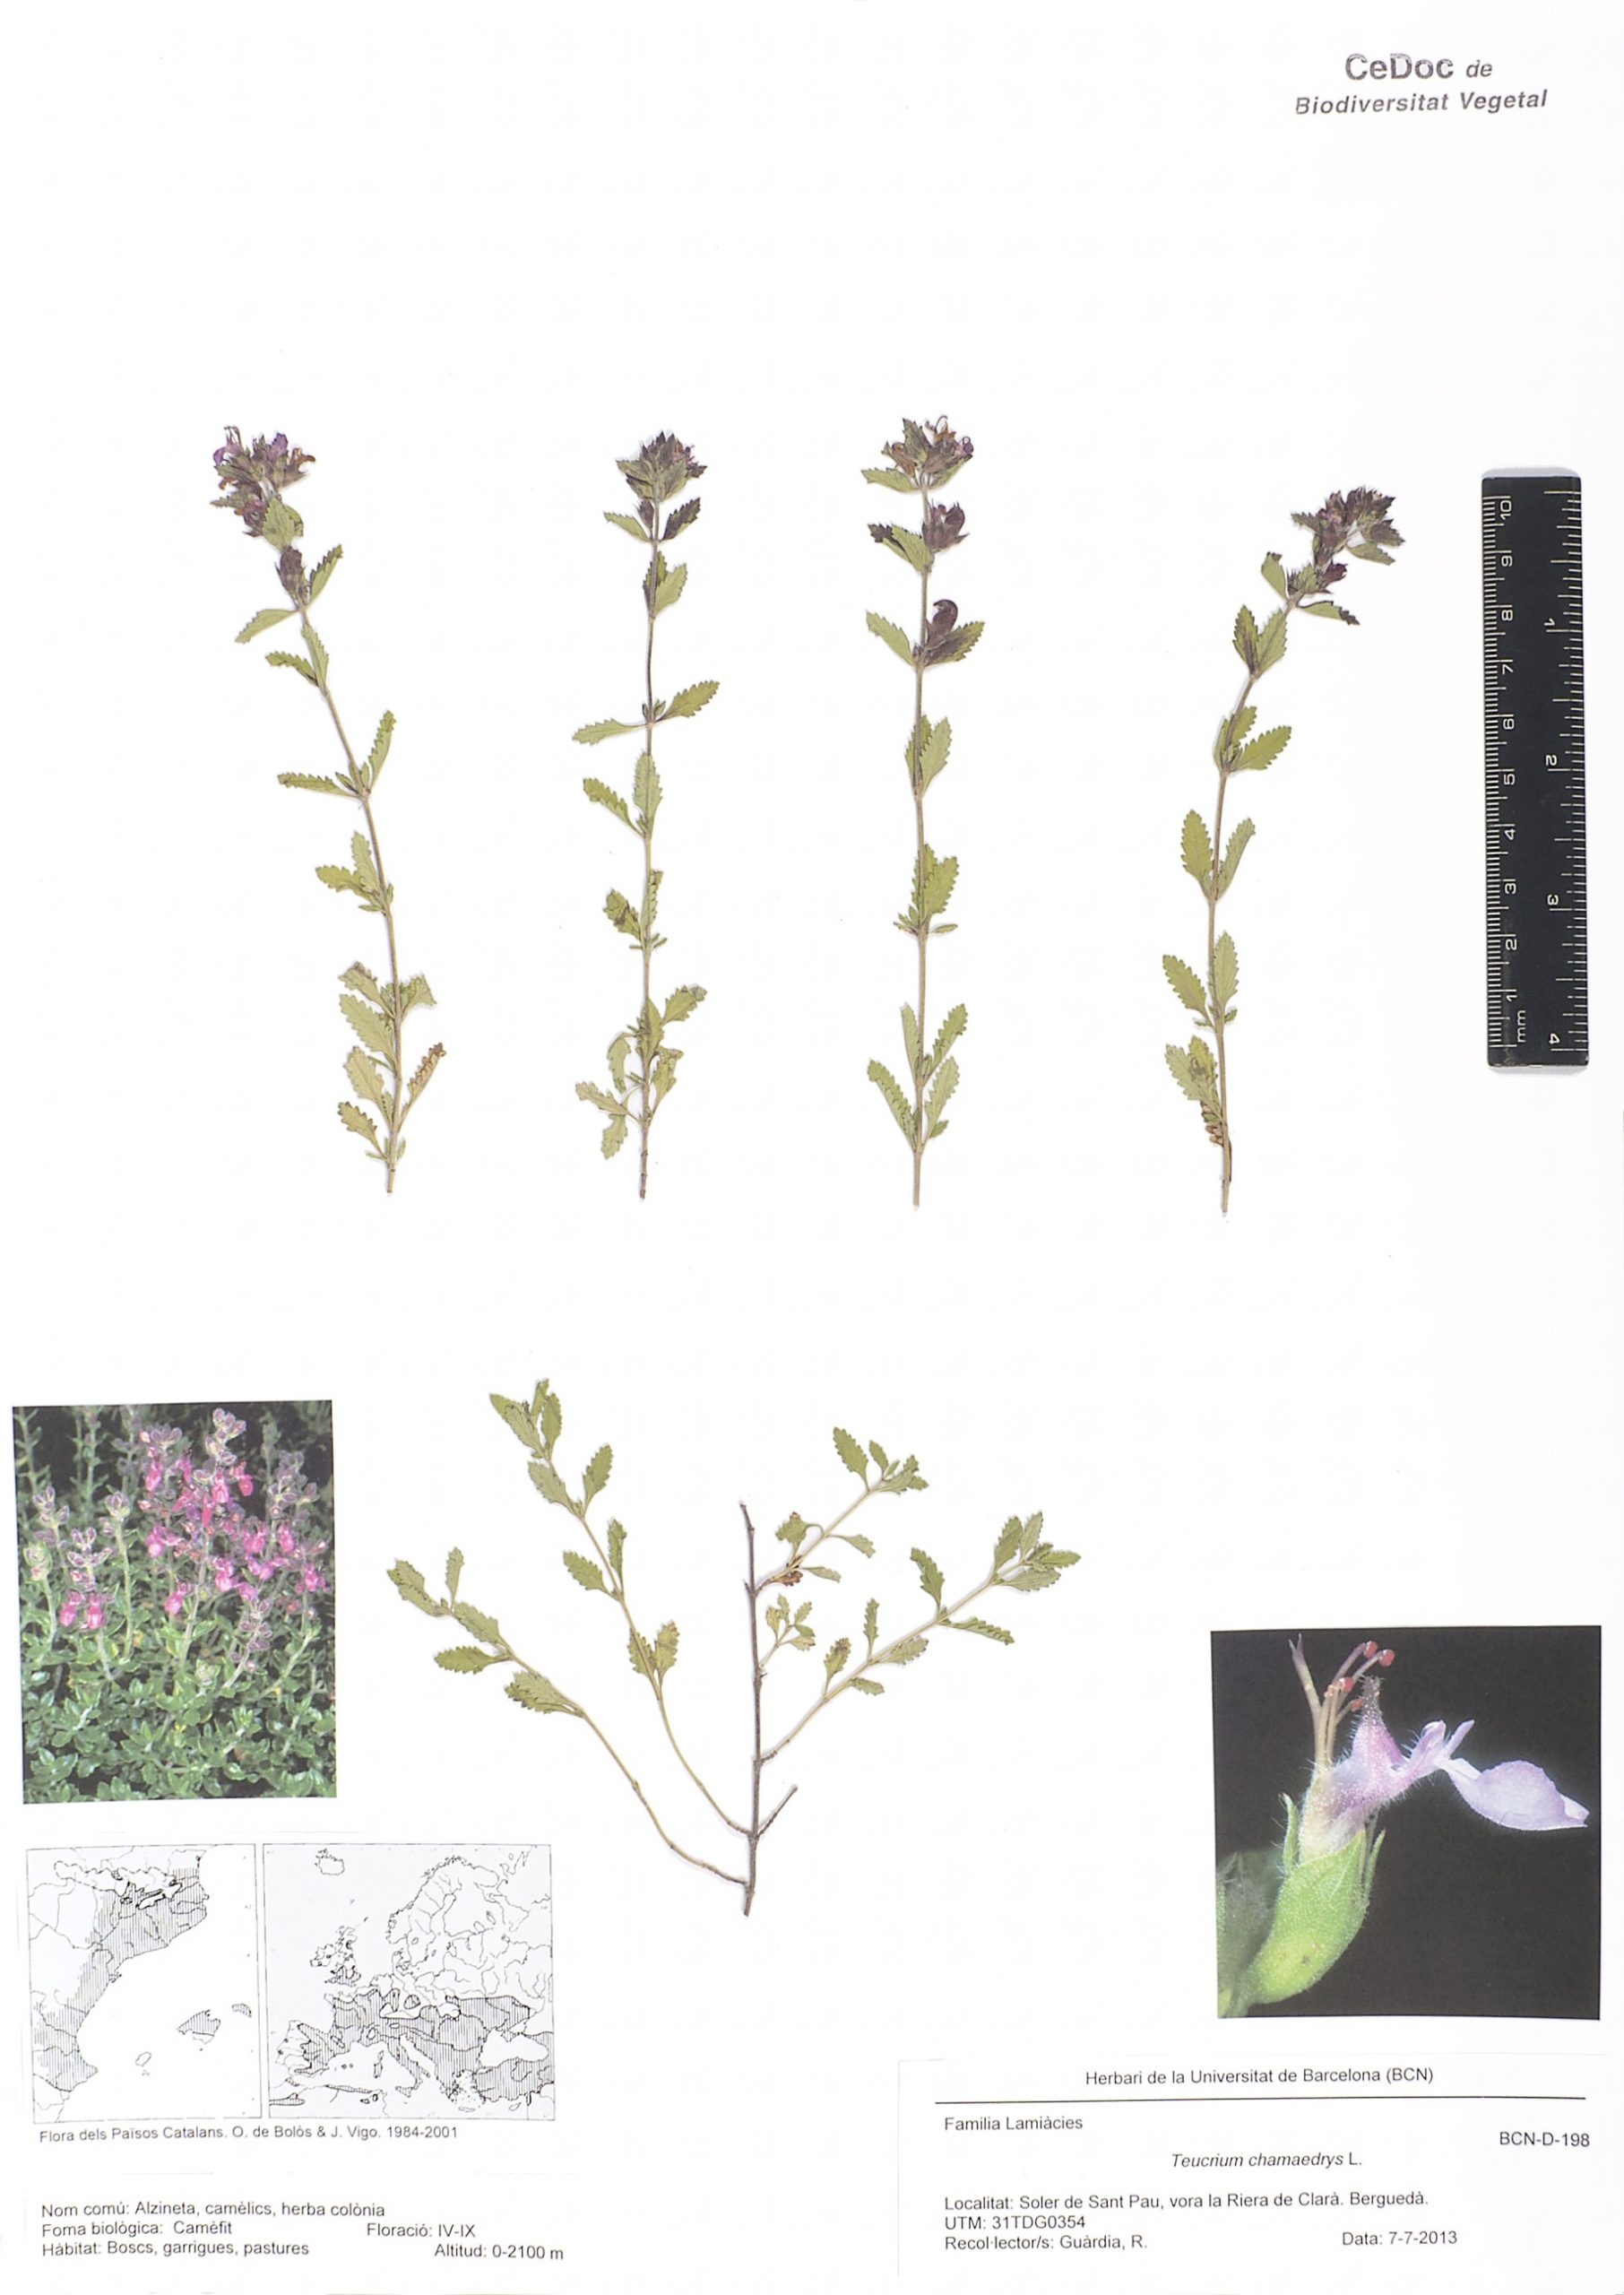 Teucrium chamaedrys L. (Alzineta, Auledella, Camedris, Camèlics, Herba colònia, Herba de sant domènec, Herbeta de la sang)